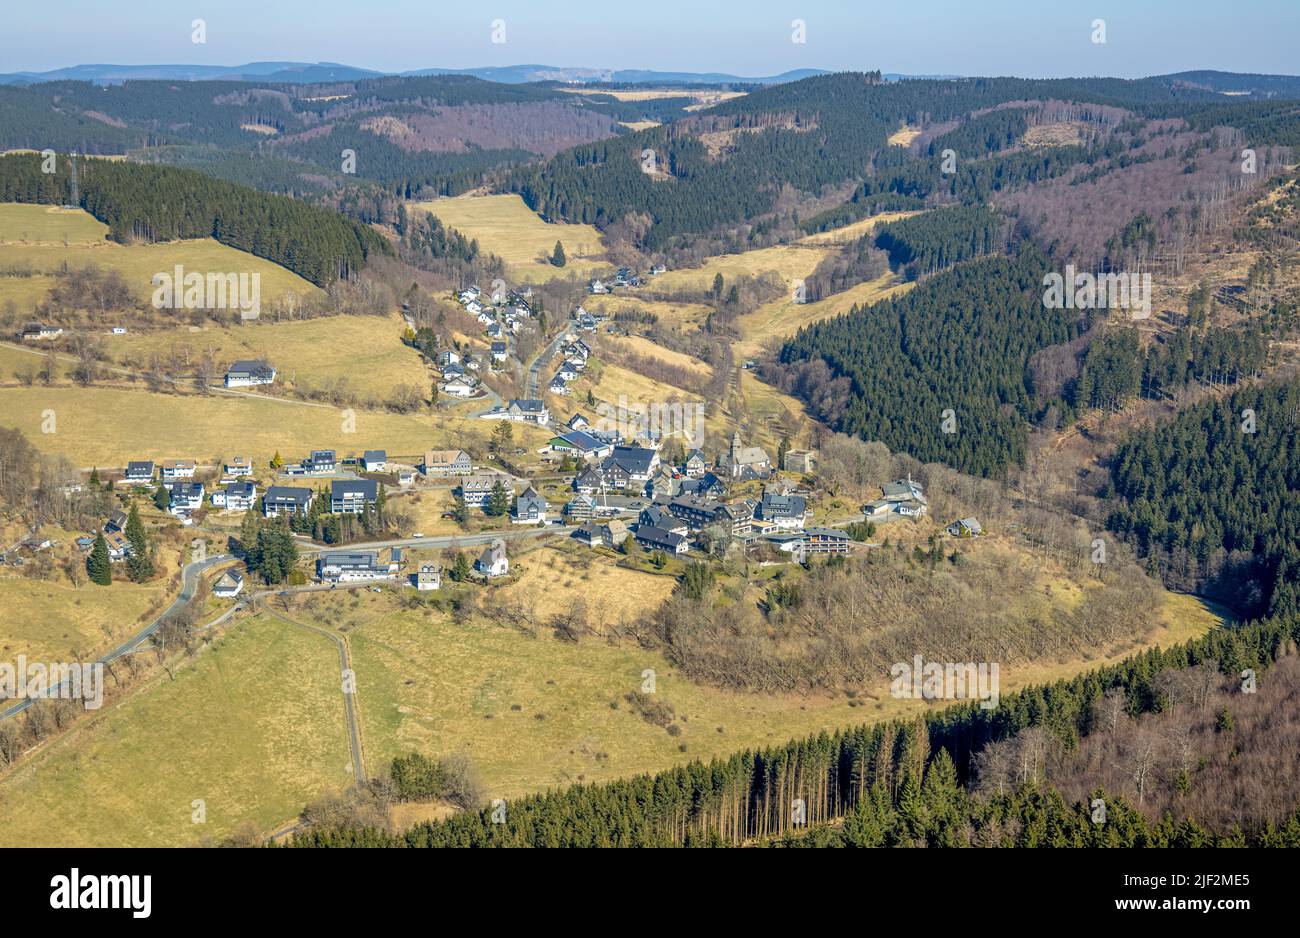 Aerial view, village view Nordenau in mountainous landscape, Hotel Landhaus Nordenau, Nordenau, Schmallenberg, Sauerland, North Rhine-Westphalia, Germ Stock Photo